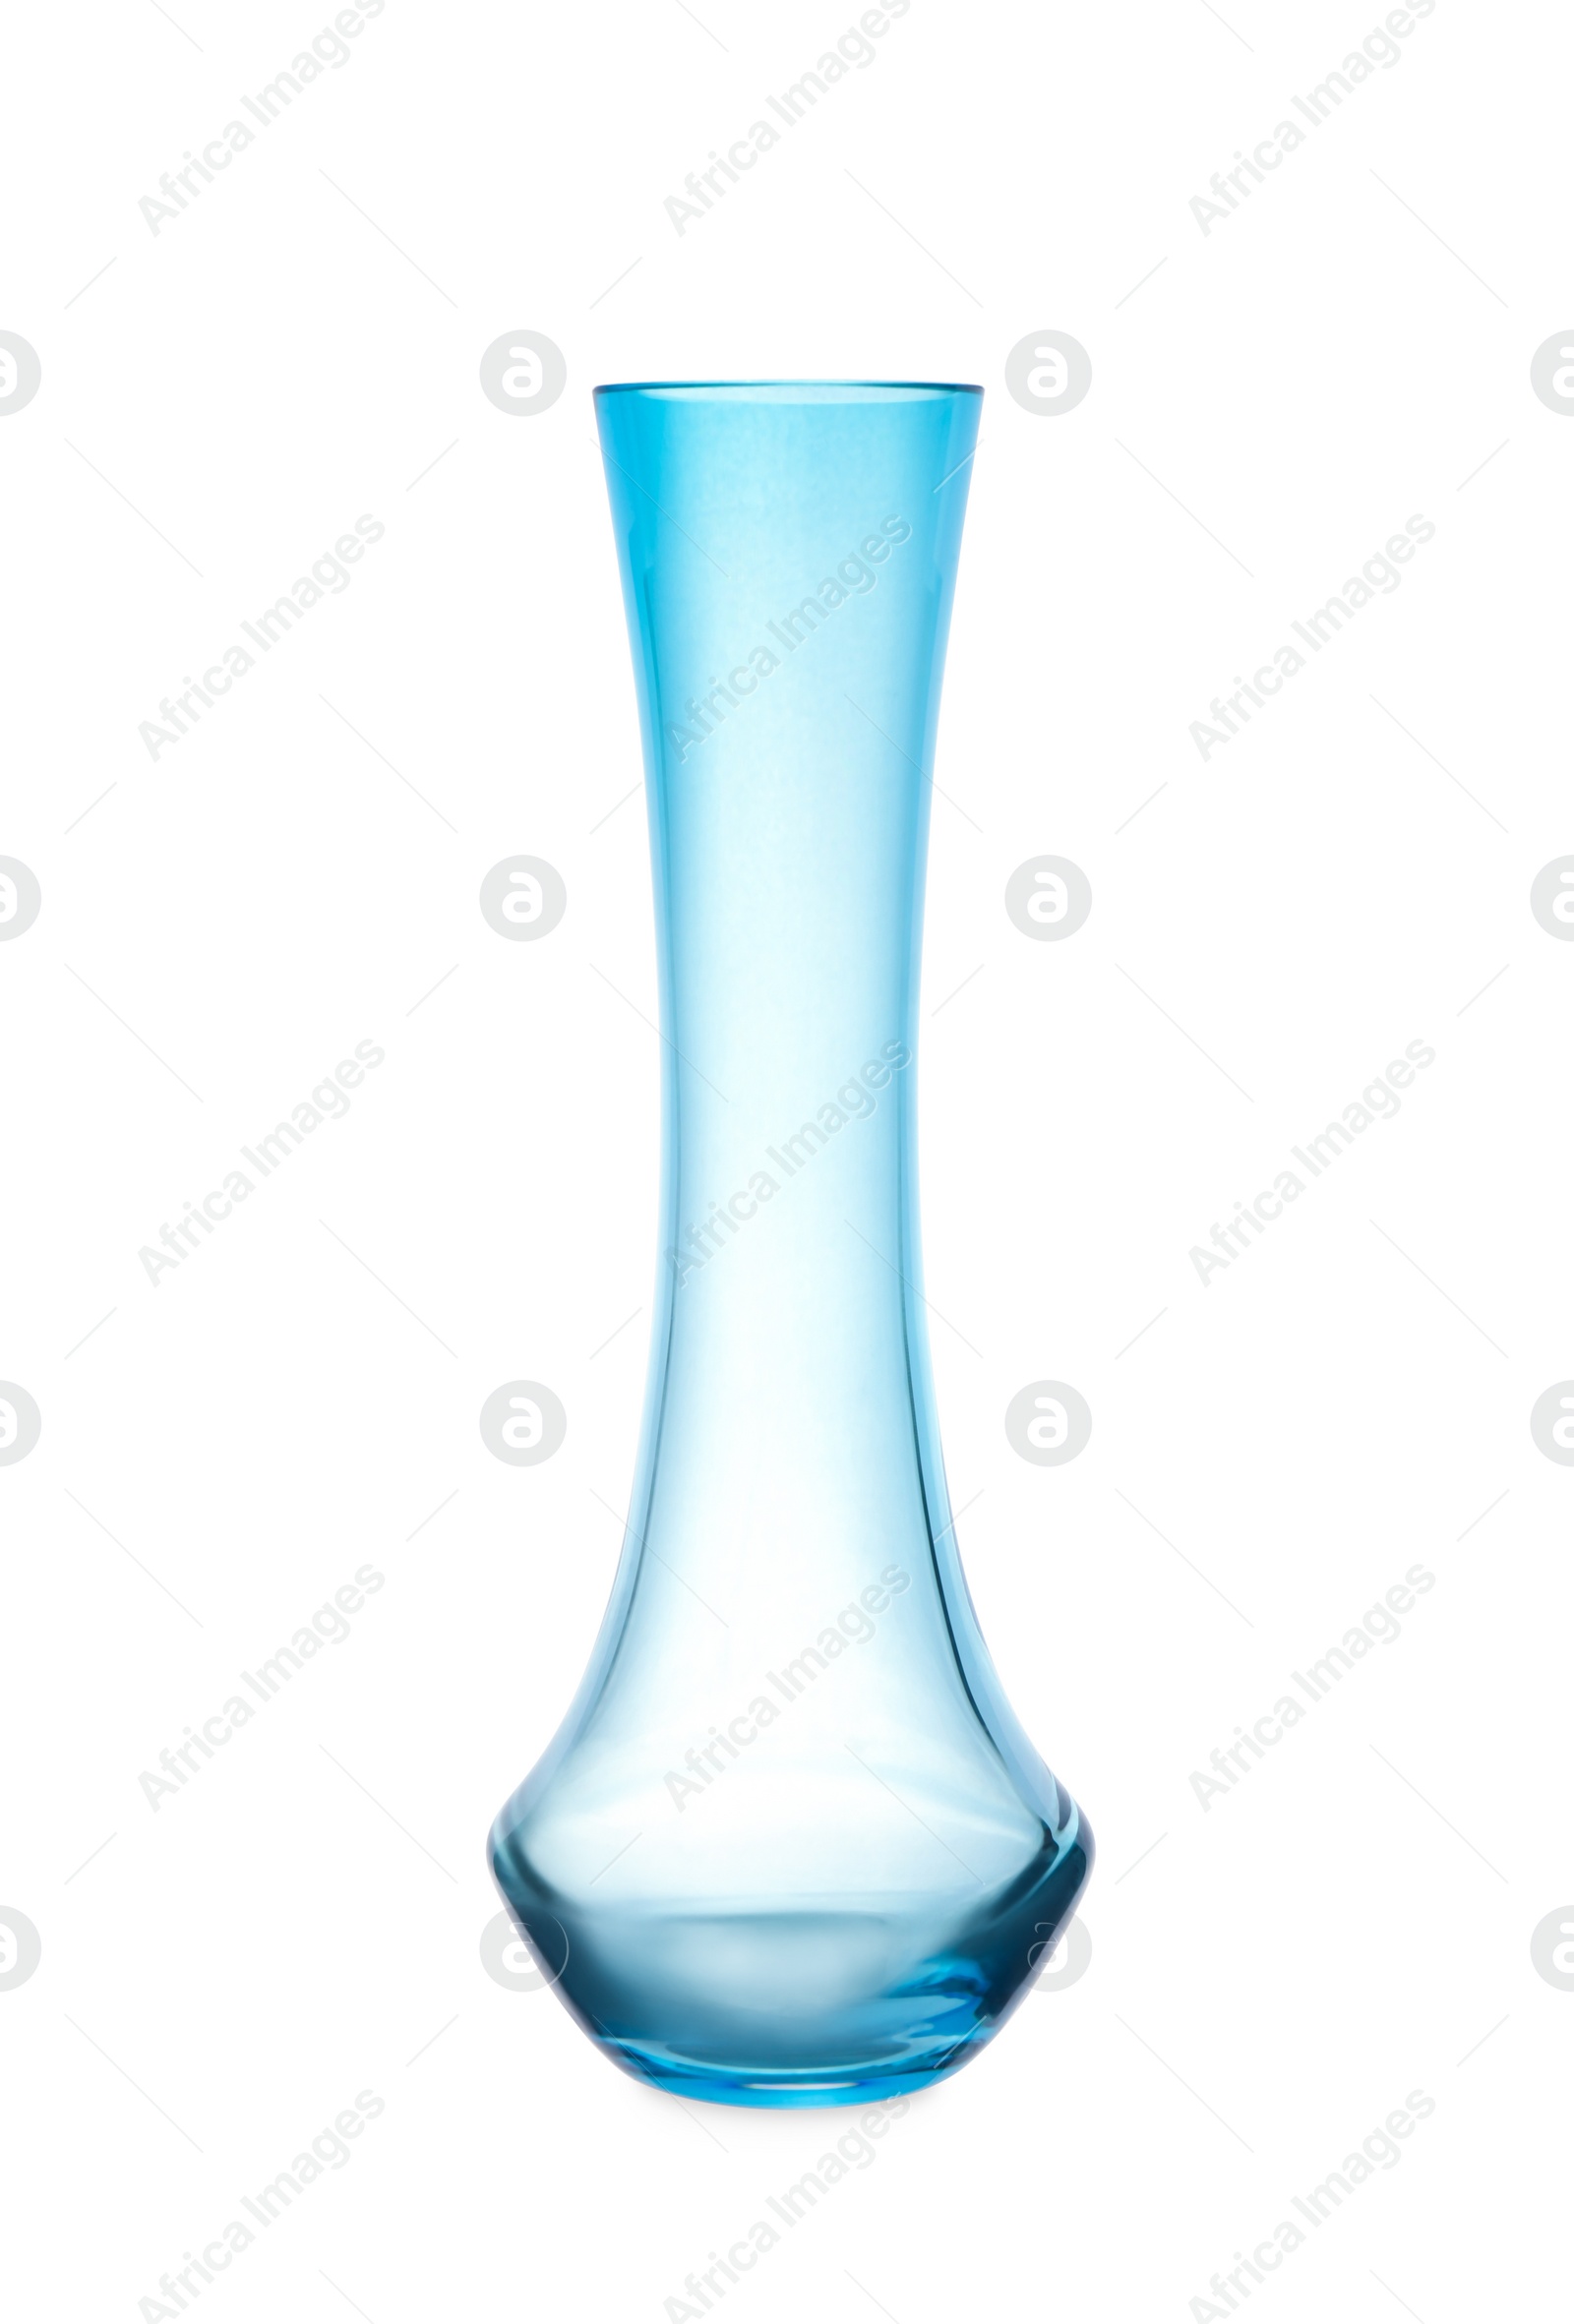 Photo of Empty transparent blue vase isolated on white